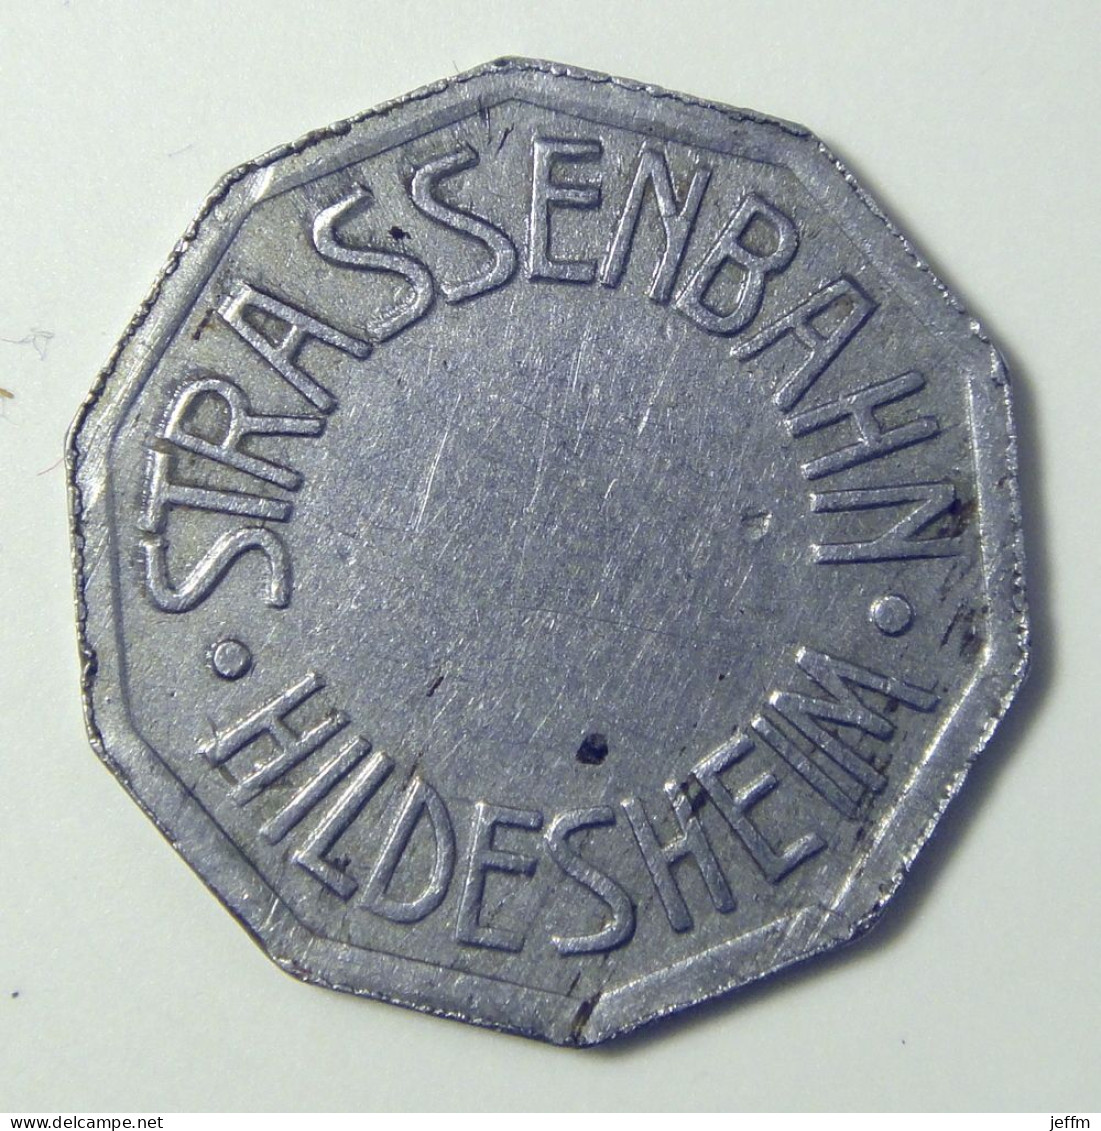 Strassebahn Hidesheim - German Transportation Token - Monetary/Of Necessity